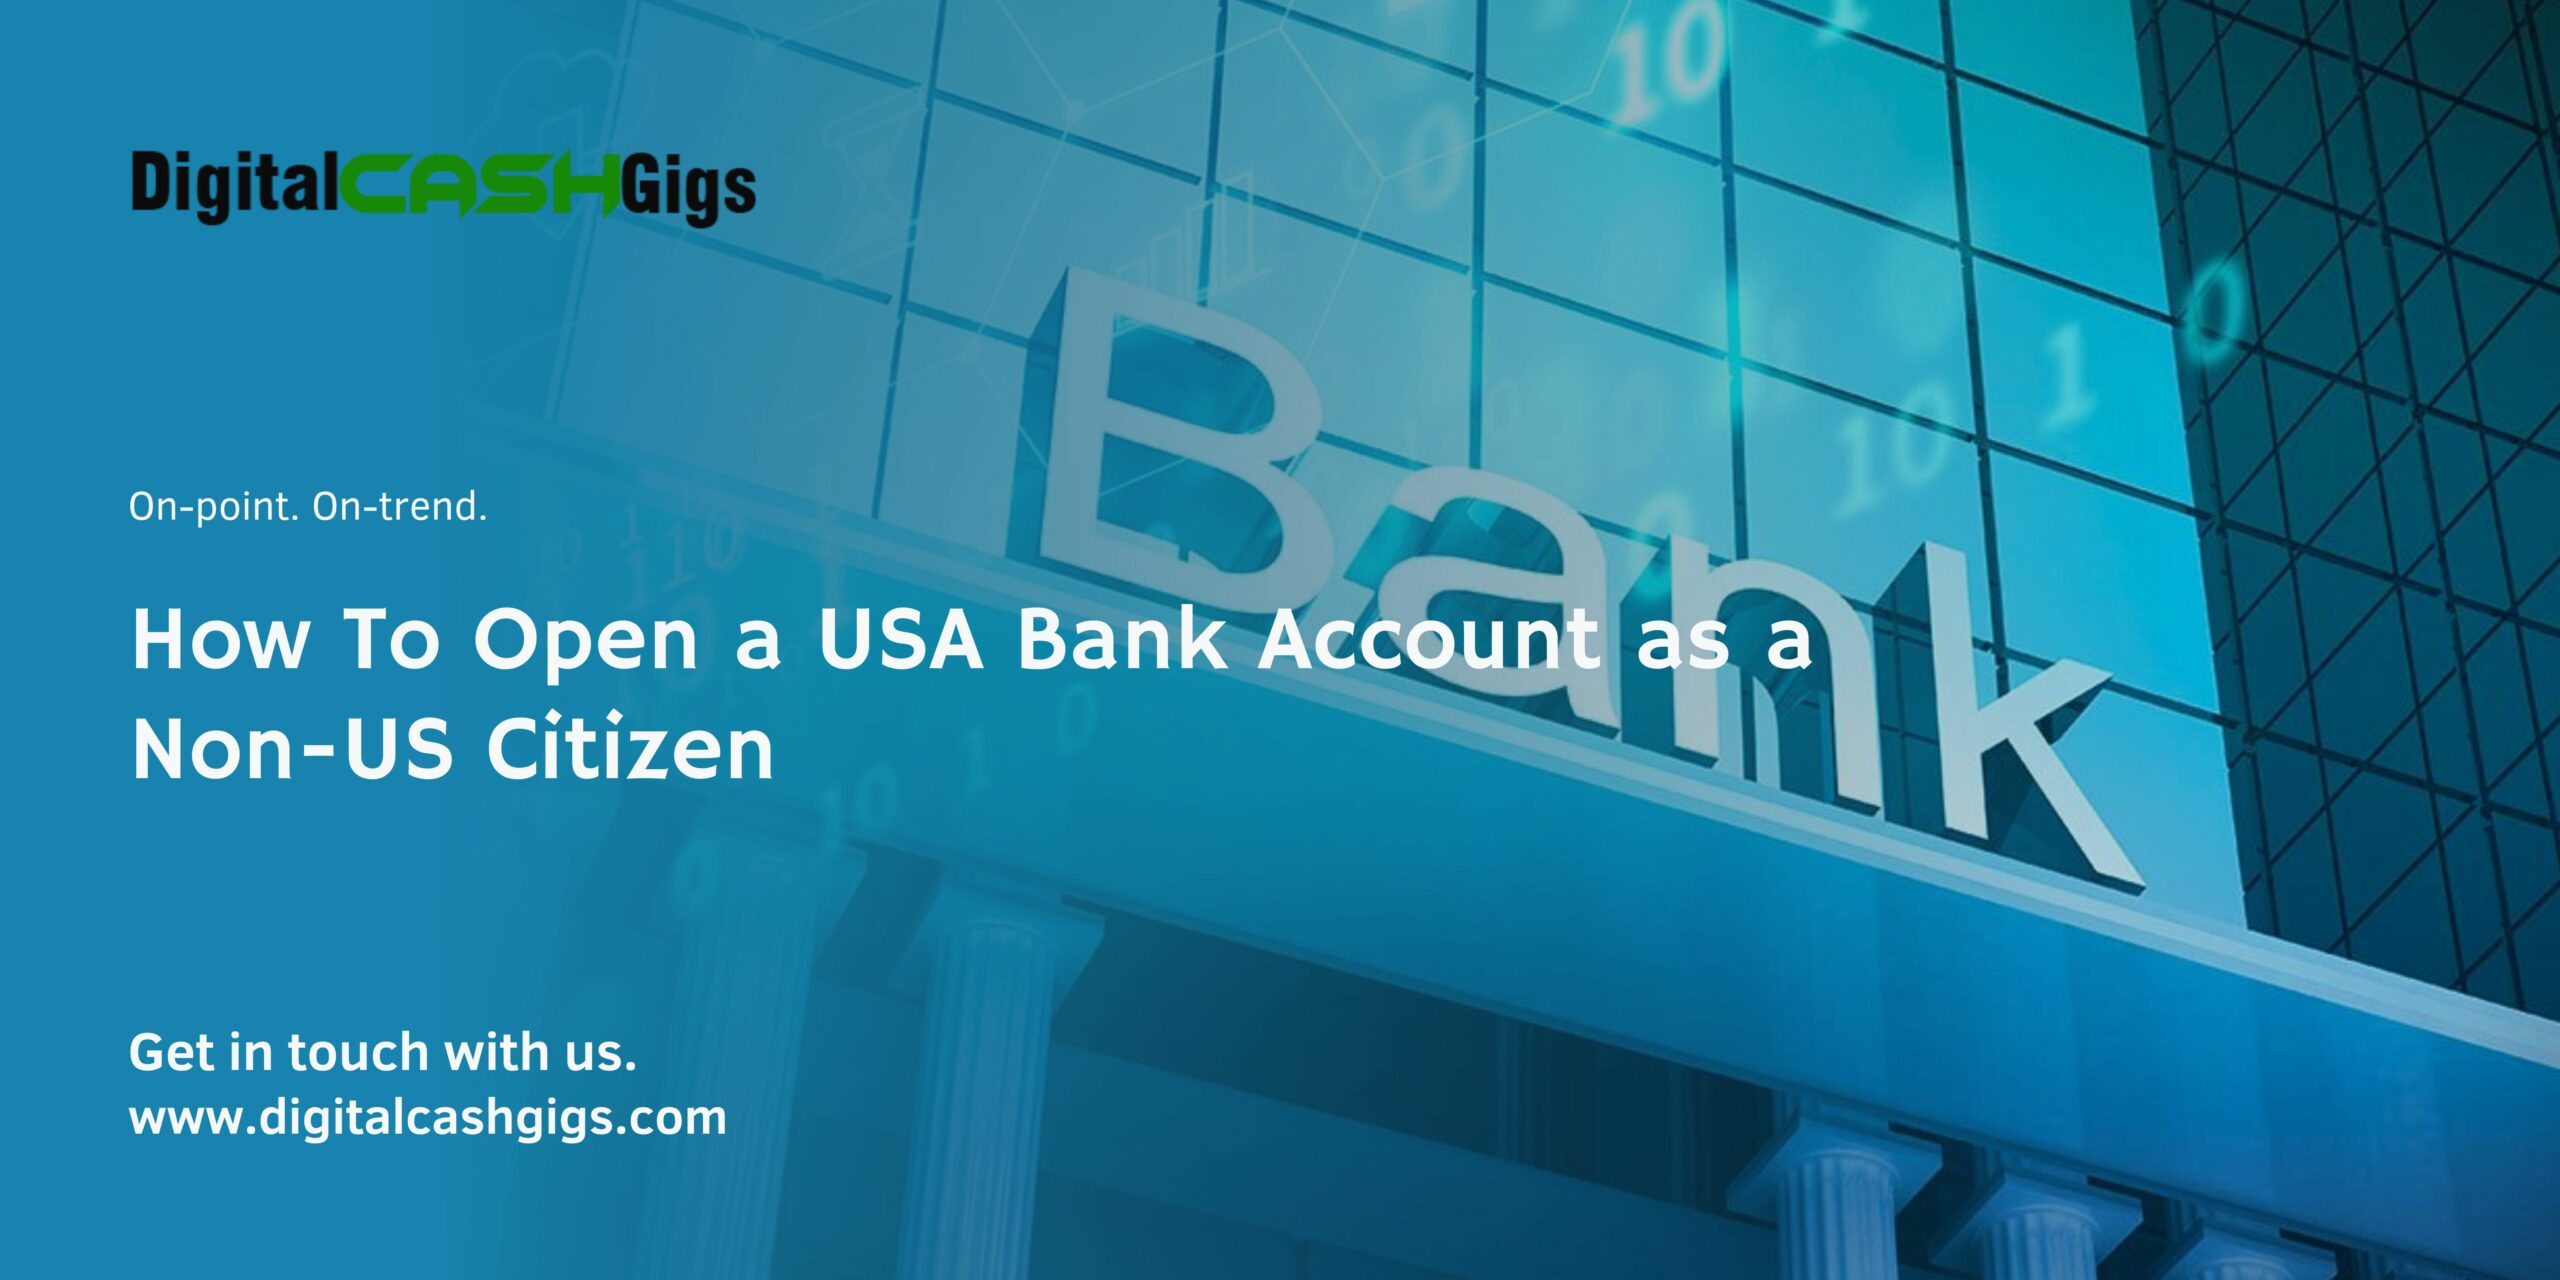 How To Open a USA Bank Account as a Non-US Citizen